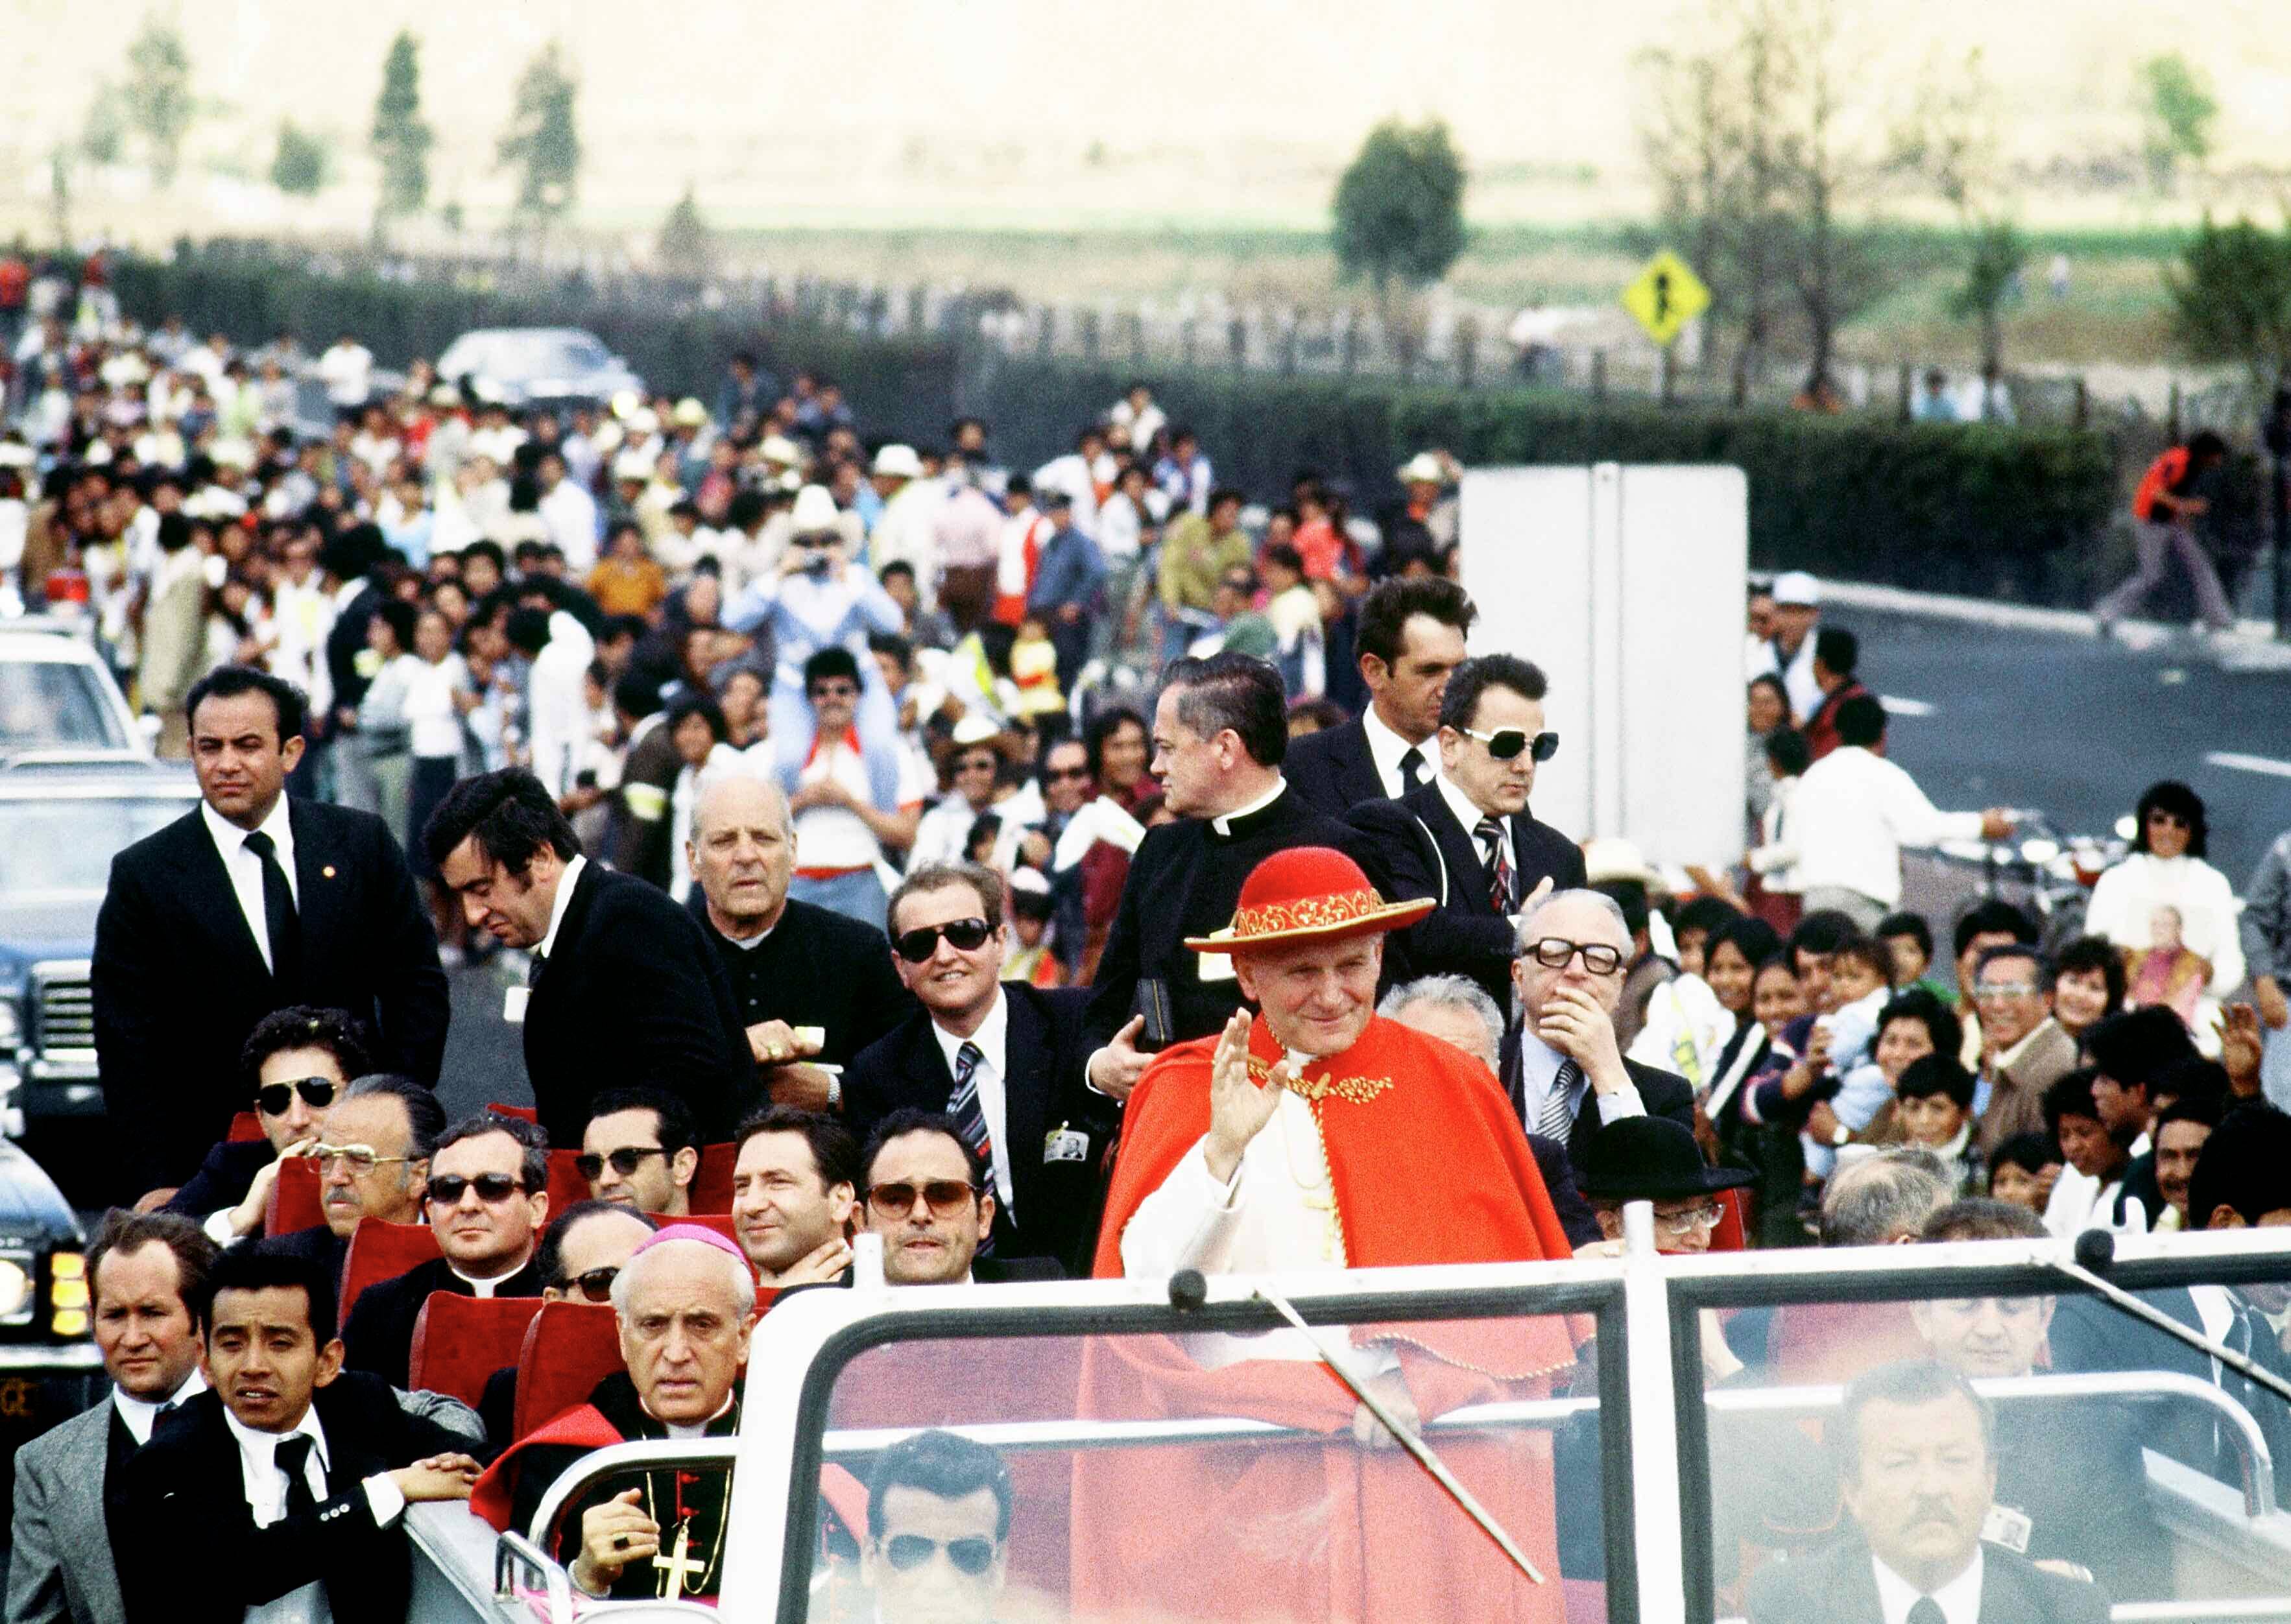 Papież Jan Paweł II w czerwonym kapeluszu jedzie samochodem ulicą, otoczony przez tłum,. w drugim rzędzie za papieżem siedzi biskup Marcinkus. Watykan